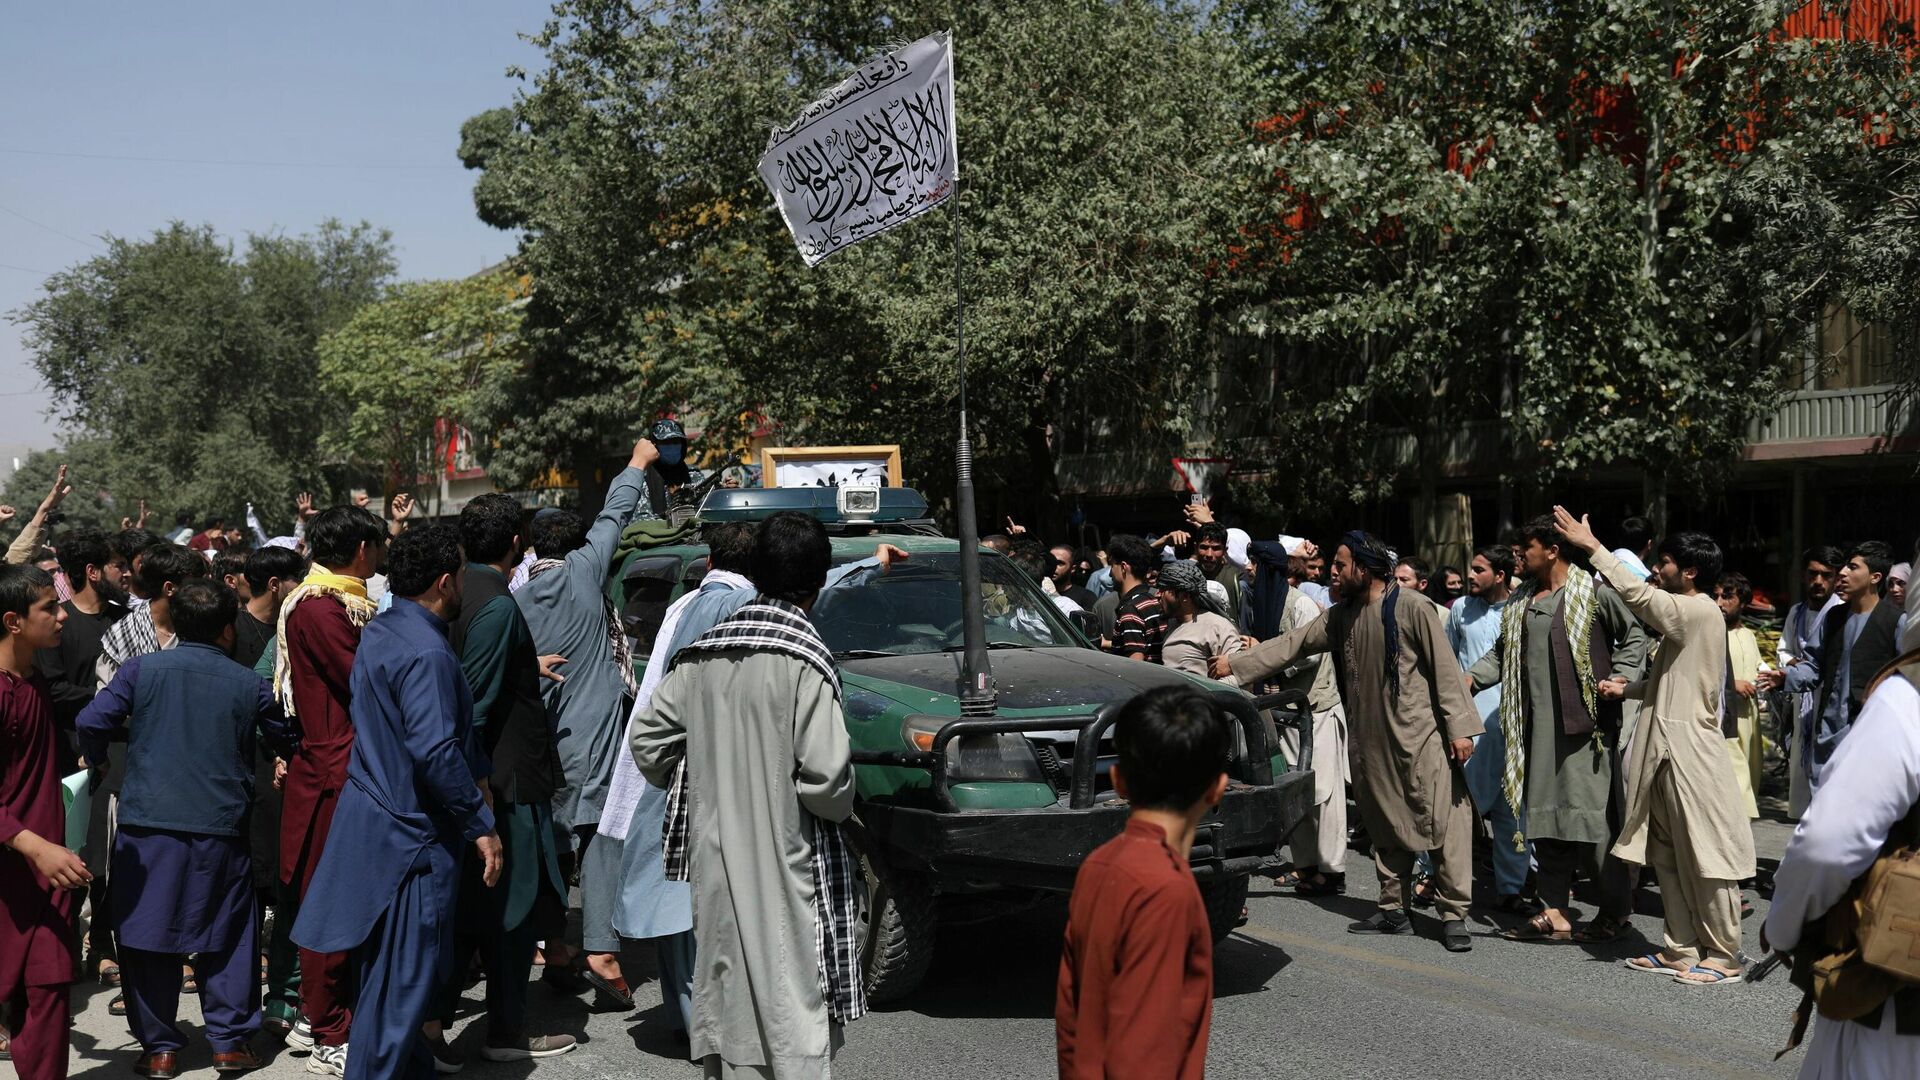 Протестующие в Кабуле окружили автомобиль с флагом движения Талибан (запрещено в РФ) - Sputnik Латвия, 1920, 07.09.2021